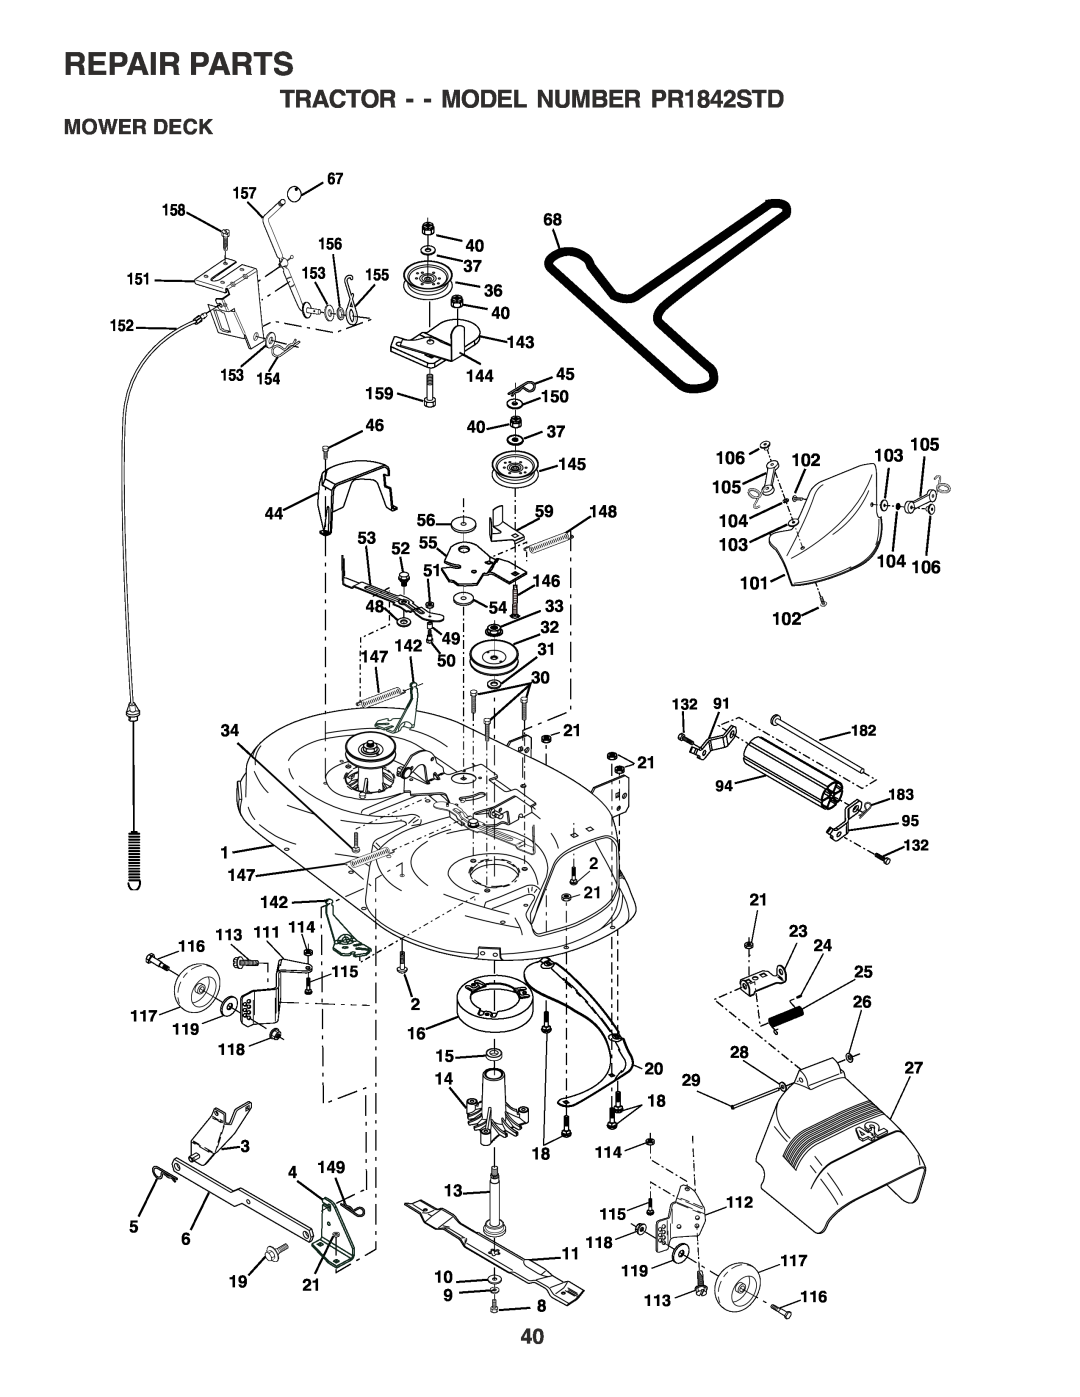 Poulan owner manual Mower Deck, Repair Parts, TRACTOR - - MODEL NUMBER PR1842STD, 103 